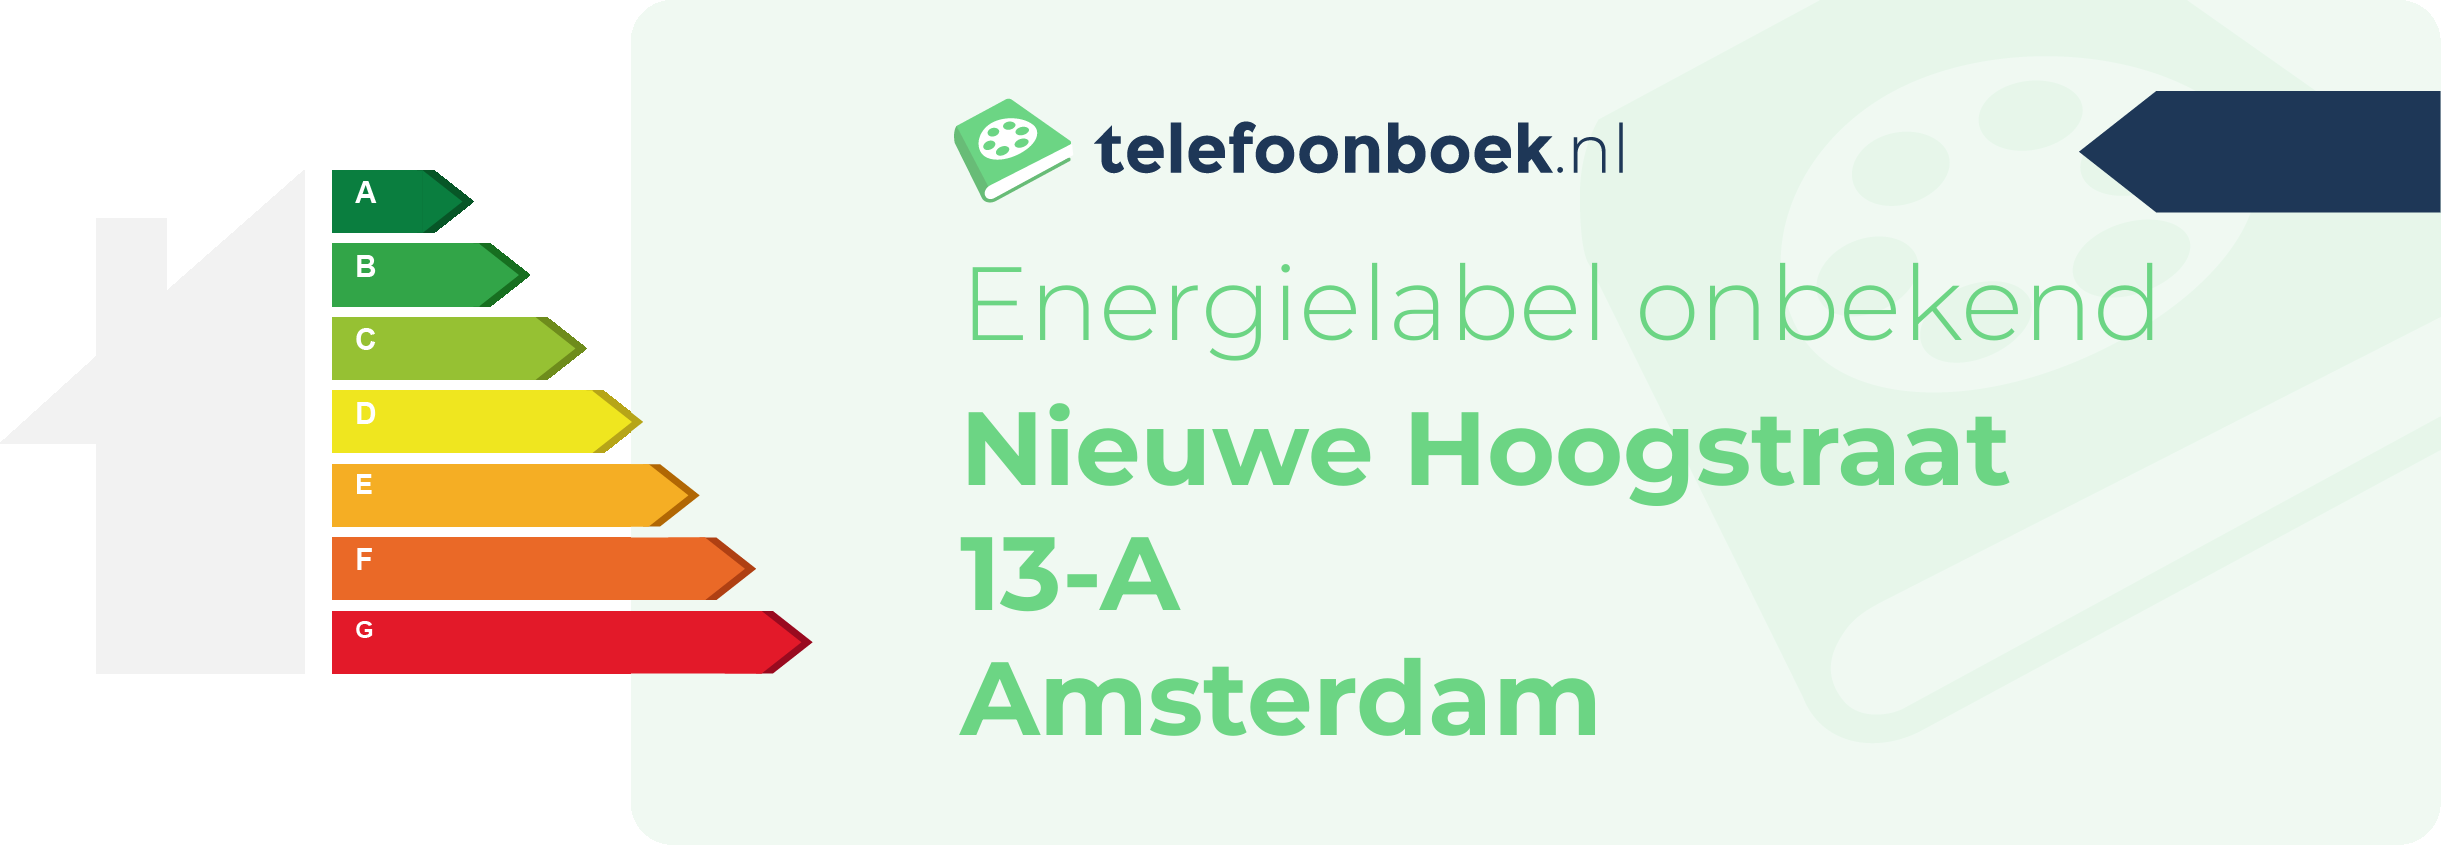 Energielabel Nieuwe Hoogstraat 13-A Amsterdam